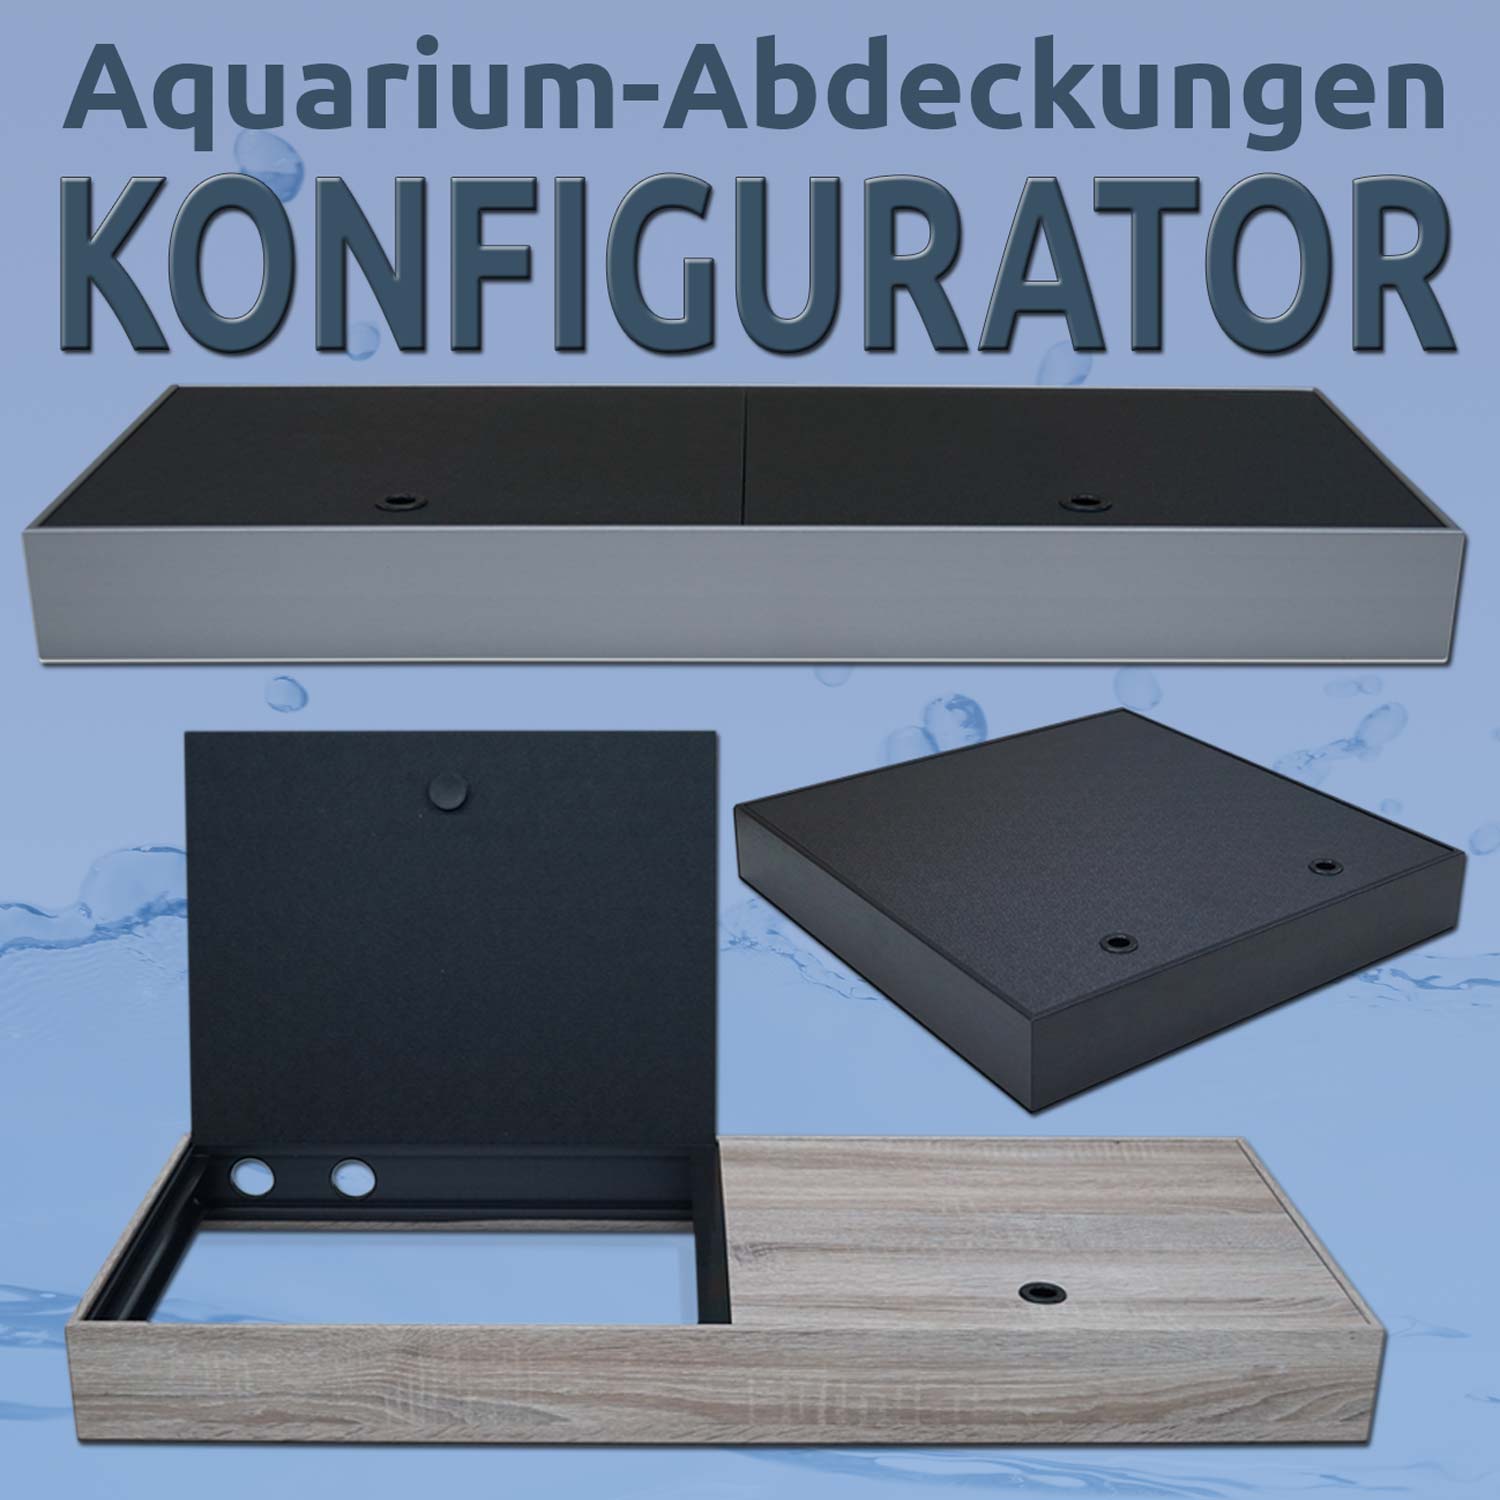 Aquarien-Abdeckungen jetzt frei konfigurieren